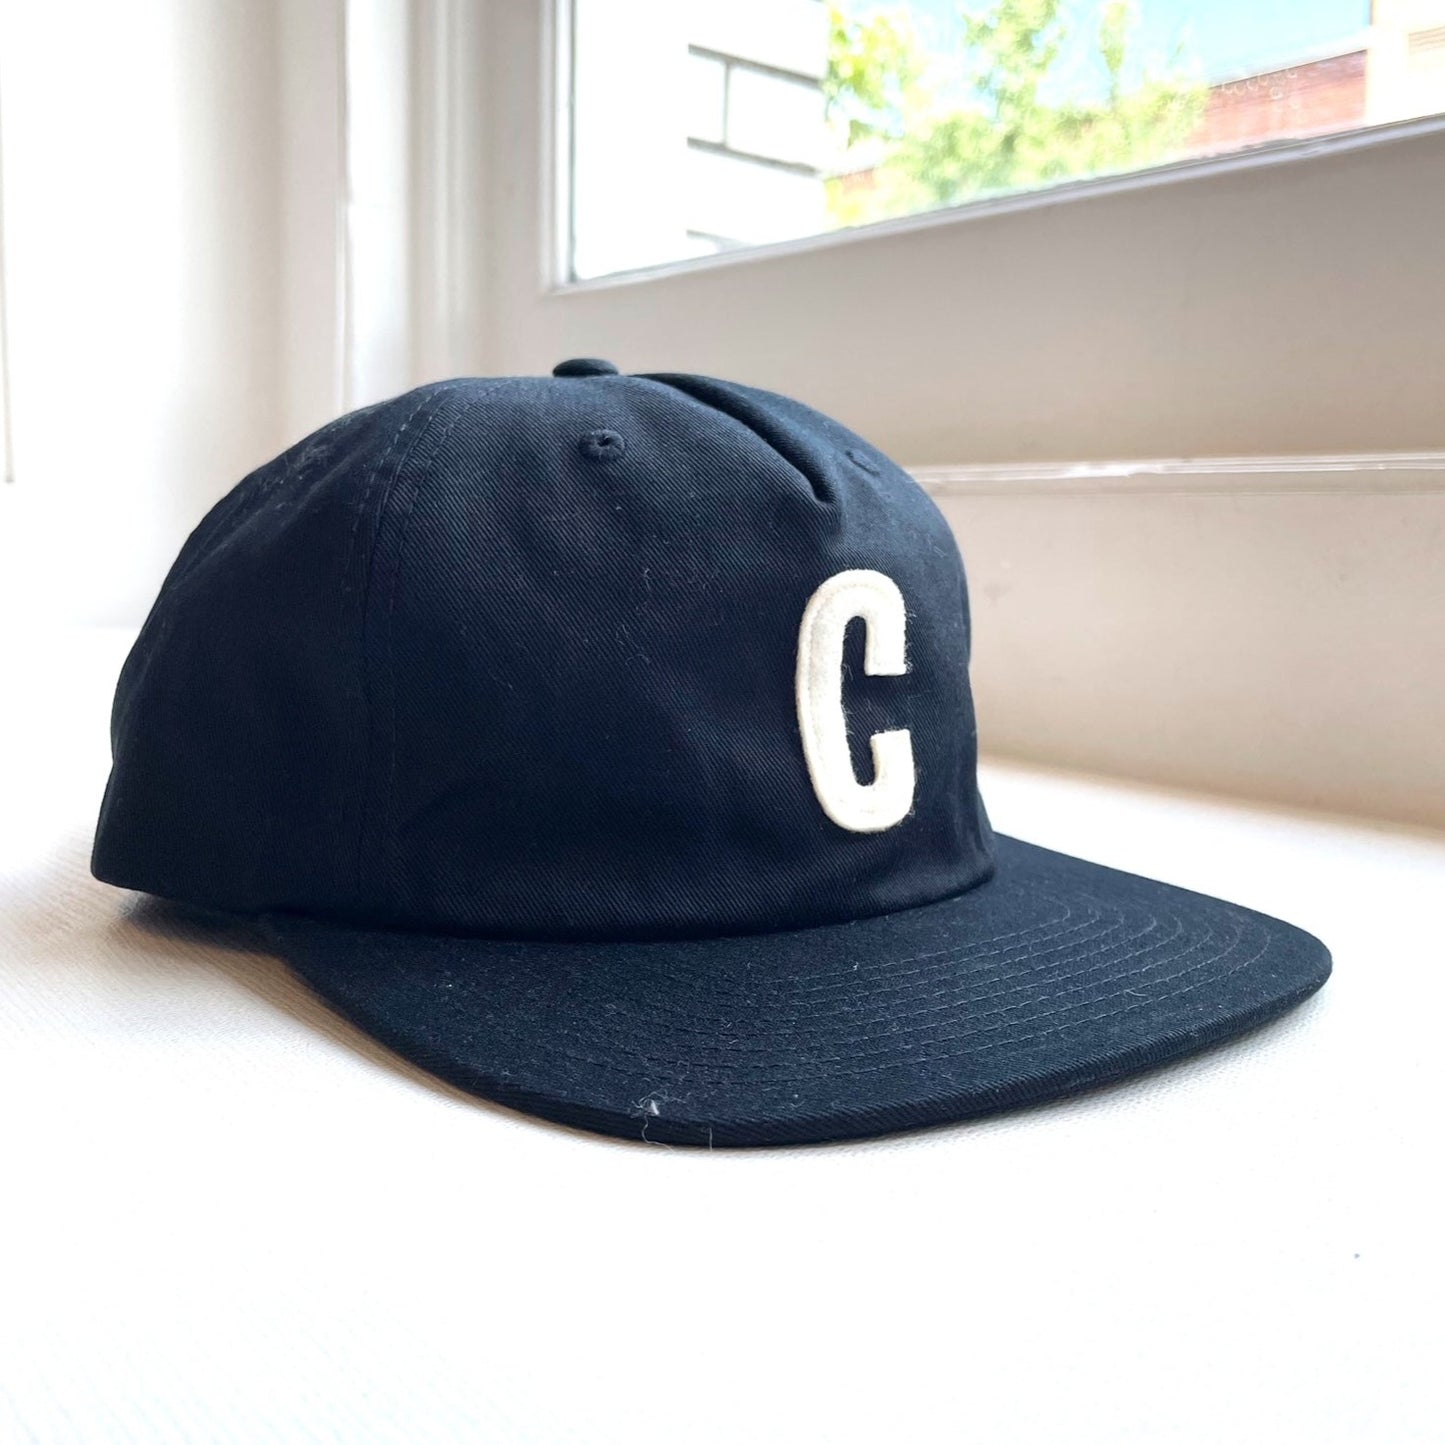 Citizen 'C" Black Hat